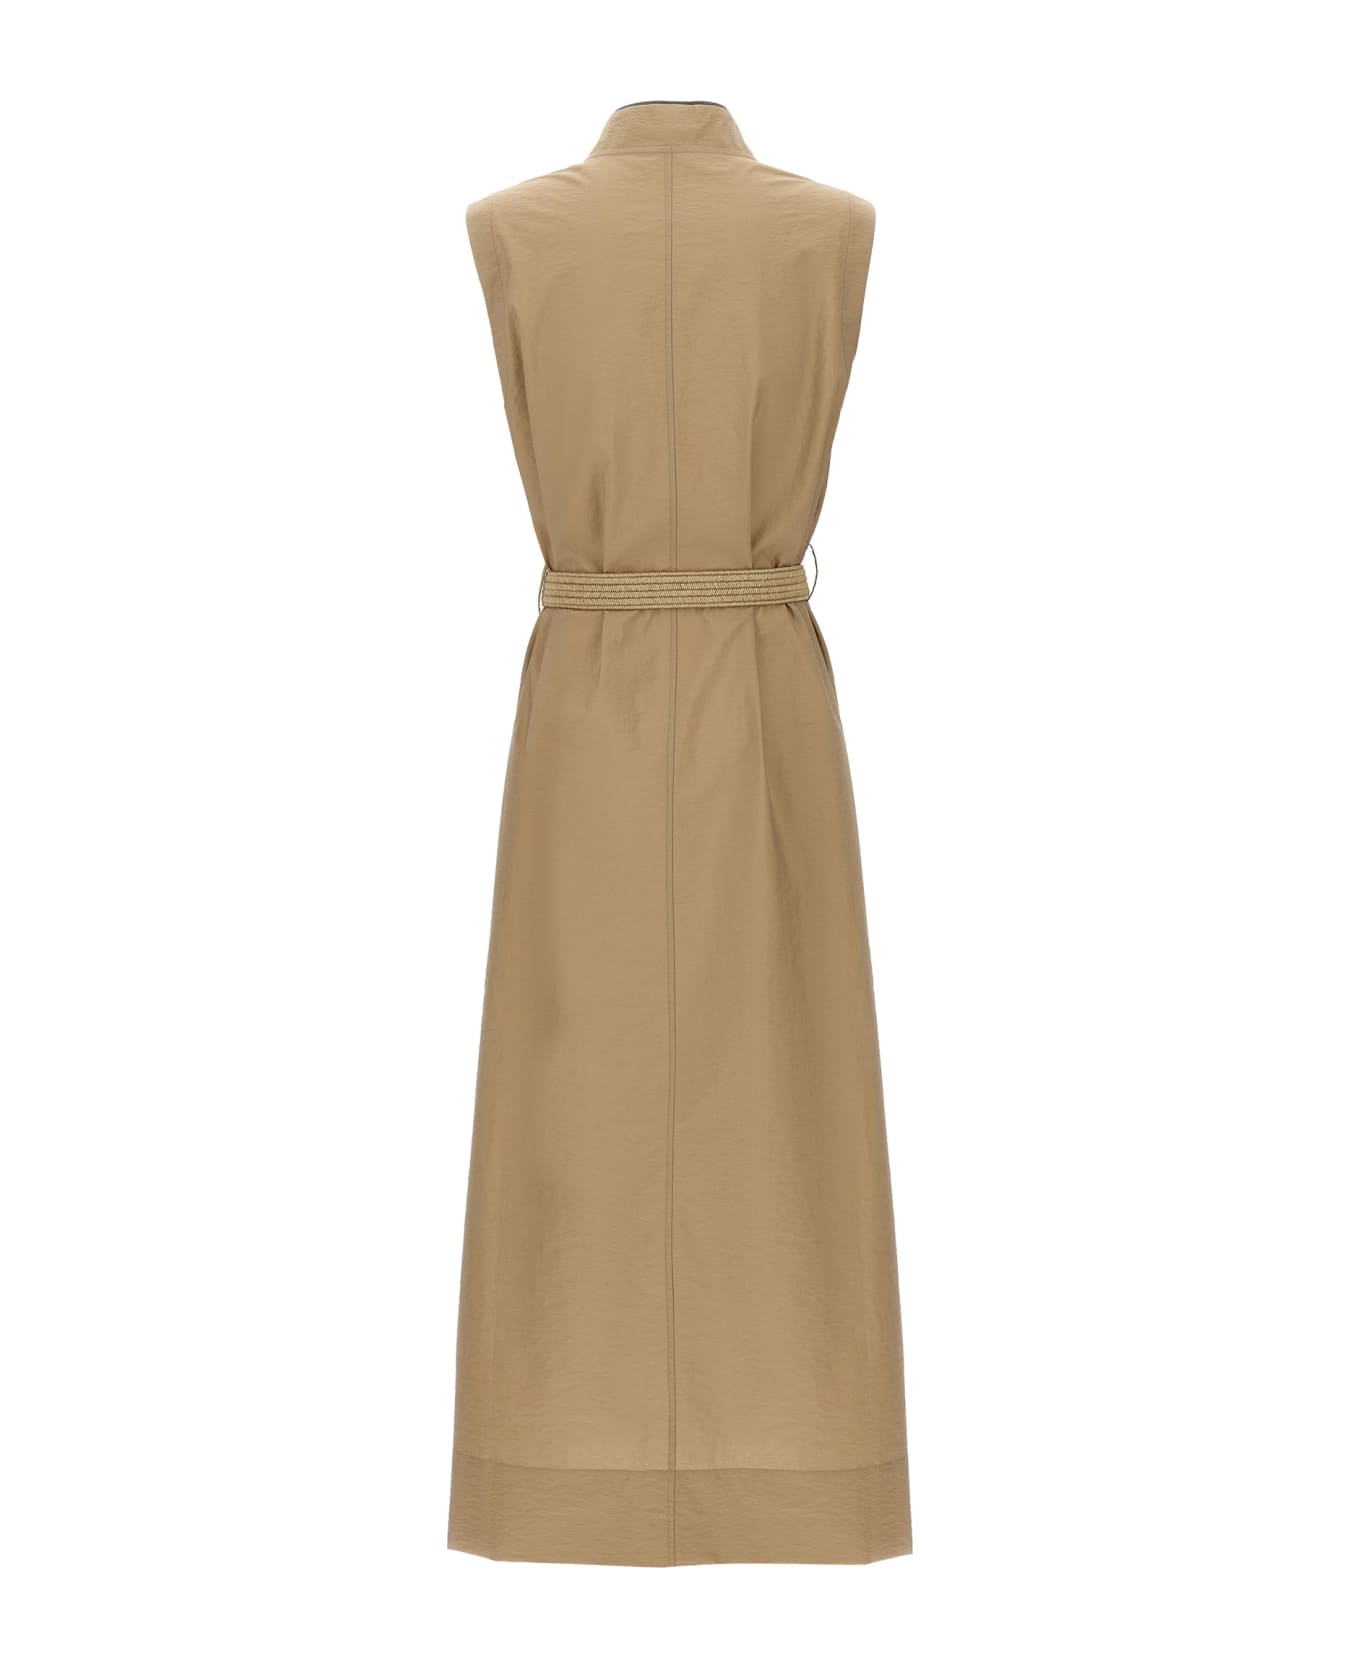 Brunello Cucinelli Techno Cotton Poplin Dress With Belt And Precious Shoulder Detail - Beige